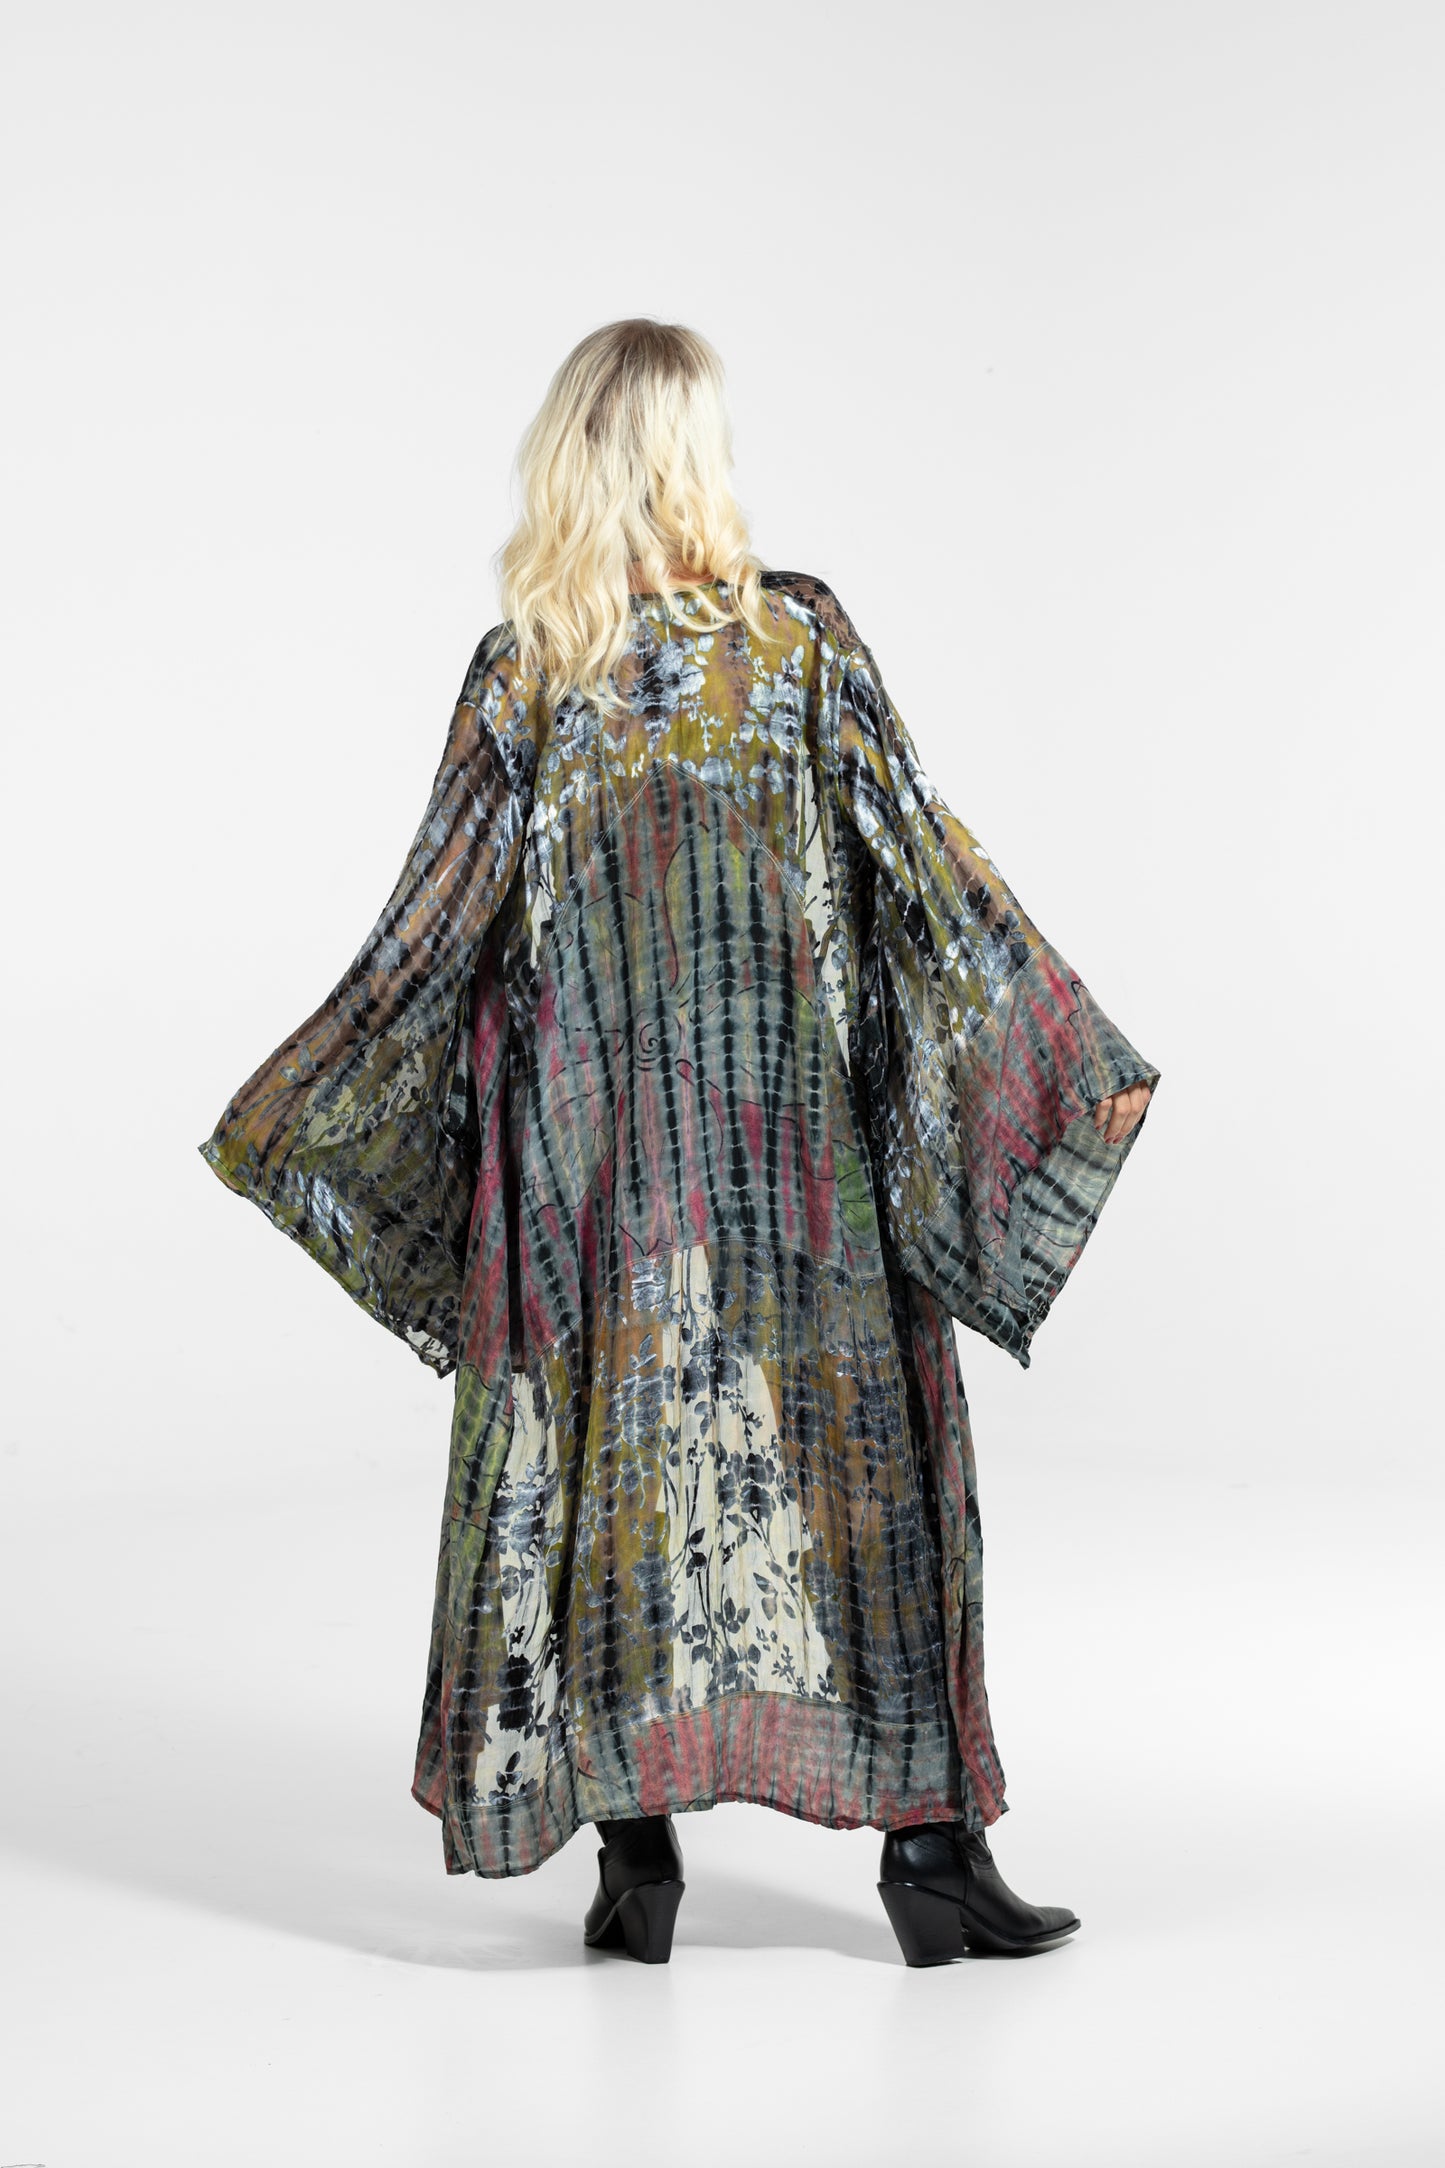 Gaia Kimono rot-senf-silber-schwarz teilweise transparent